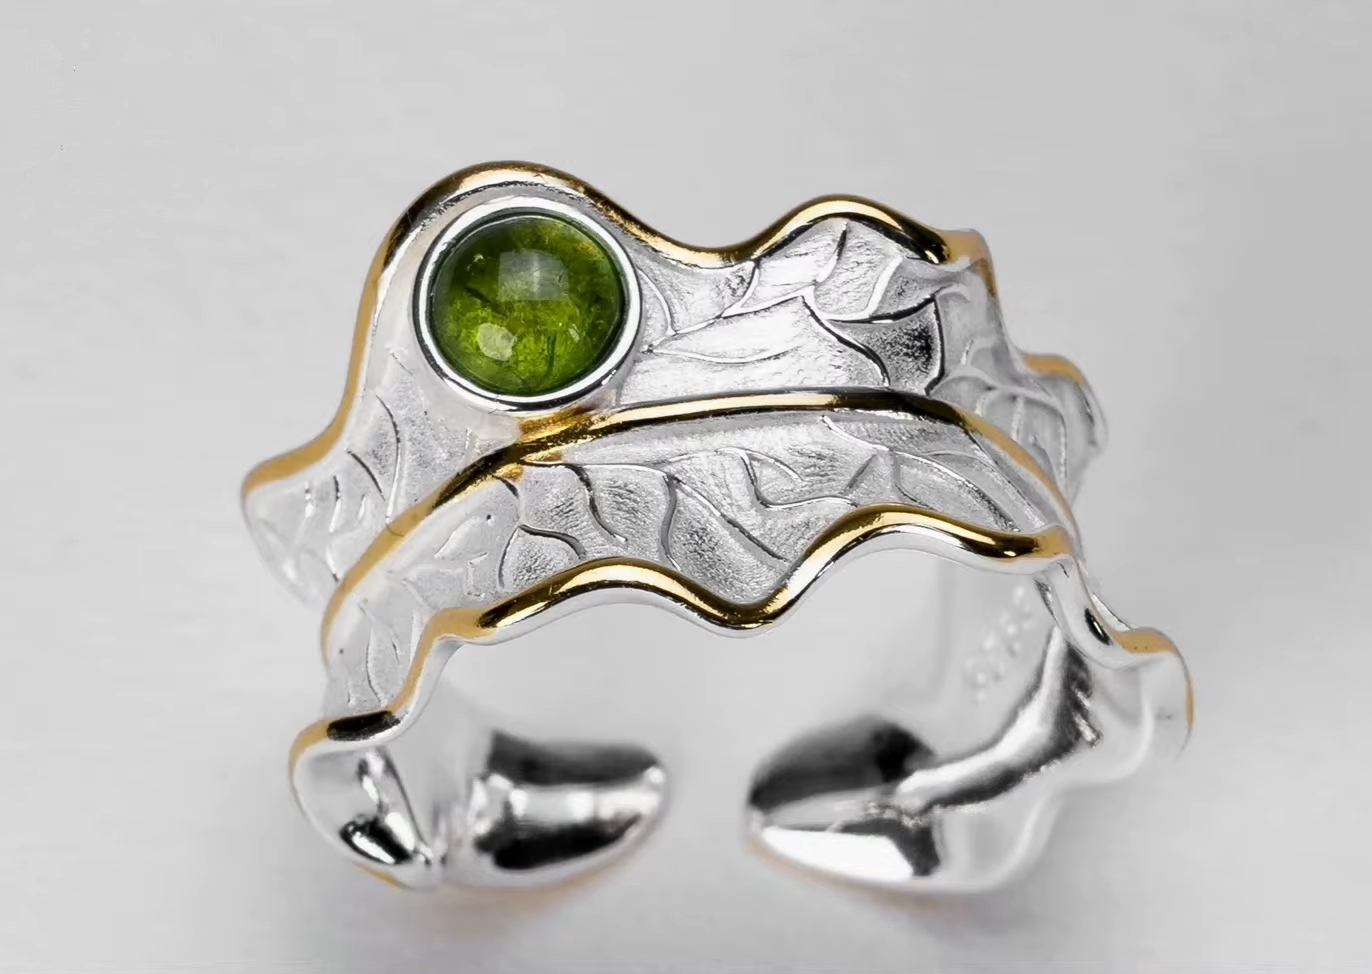 Lichtelfen Ring - Schutzring -  925 Sterling Silber